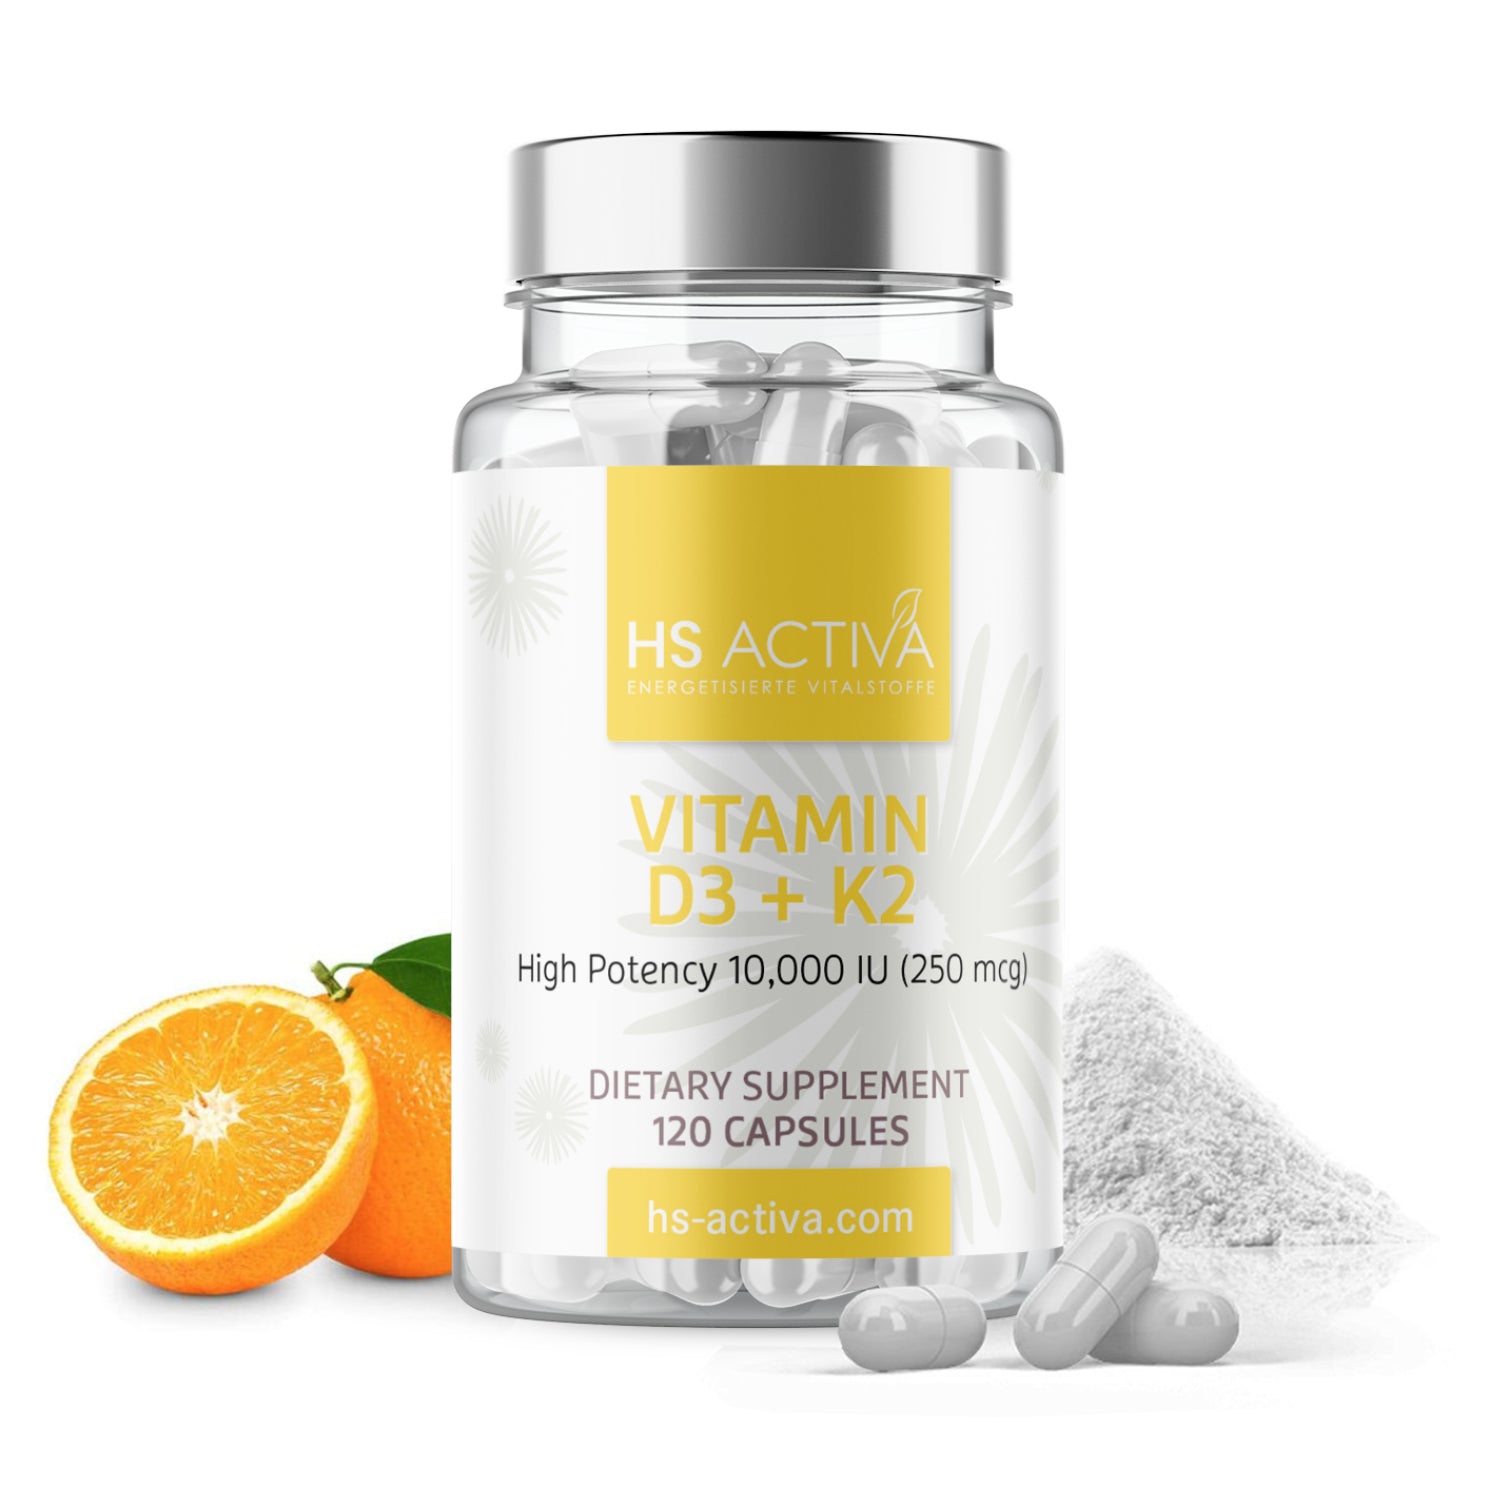 Vitamin D3+K2 - High Potency: 10,000 IU (120 capsules)